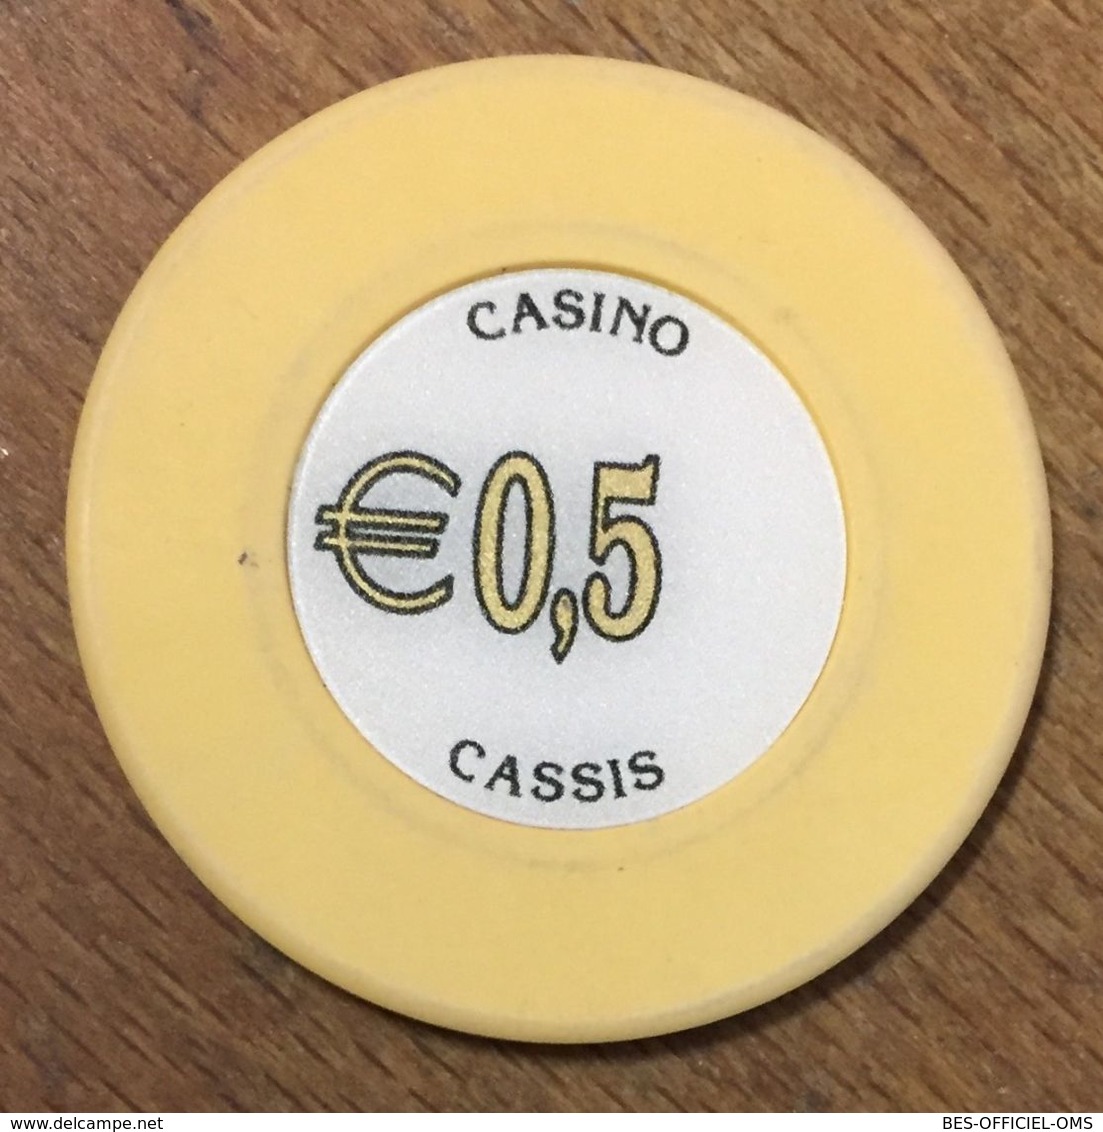 13 CASSIS CASINO JETON DE 0,5 EURO CHIP TOKENS COINS GAMING - Casino